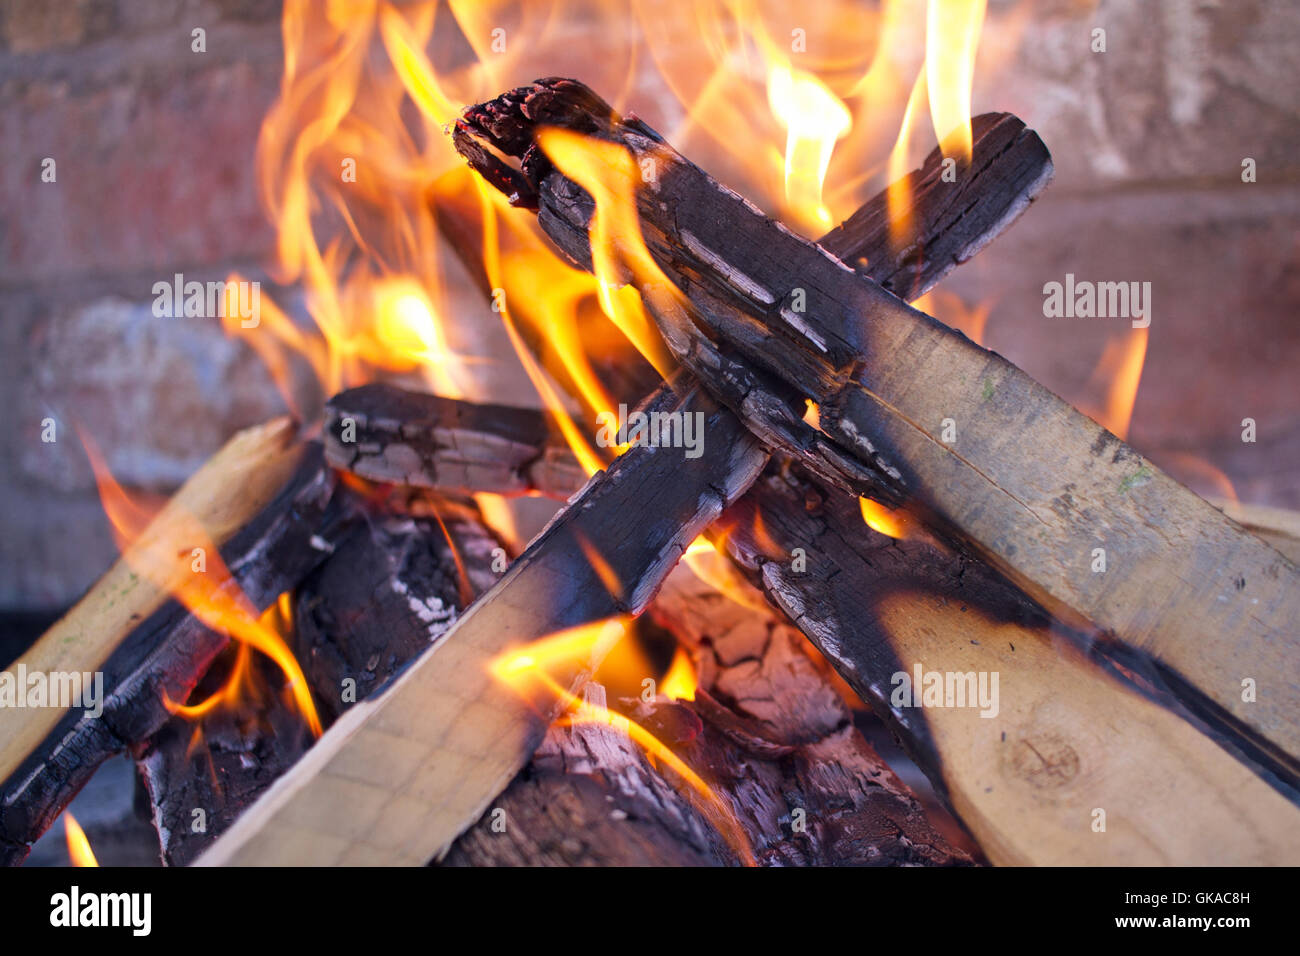 La combustion du bois, feu ouvert sur un barbecue en brique. Le